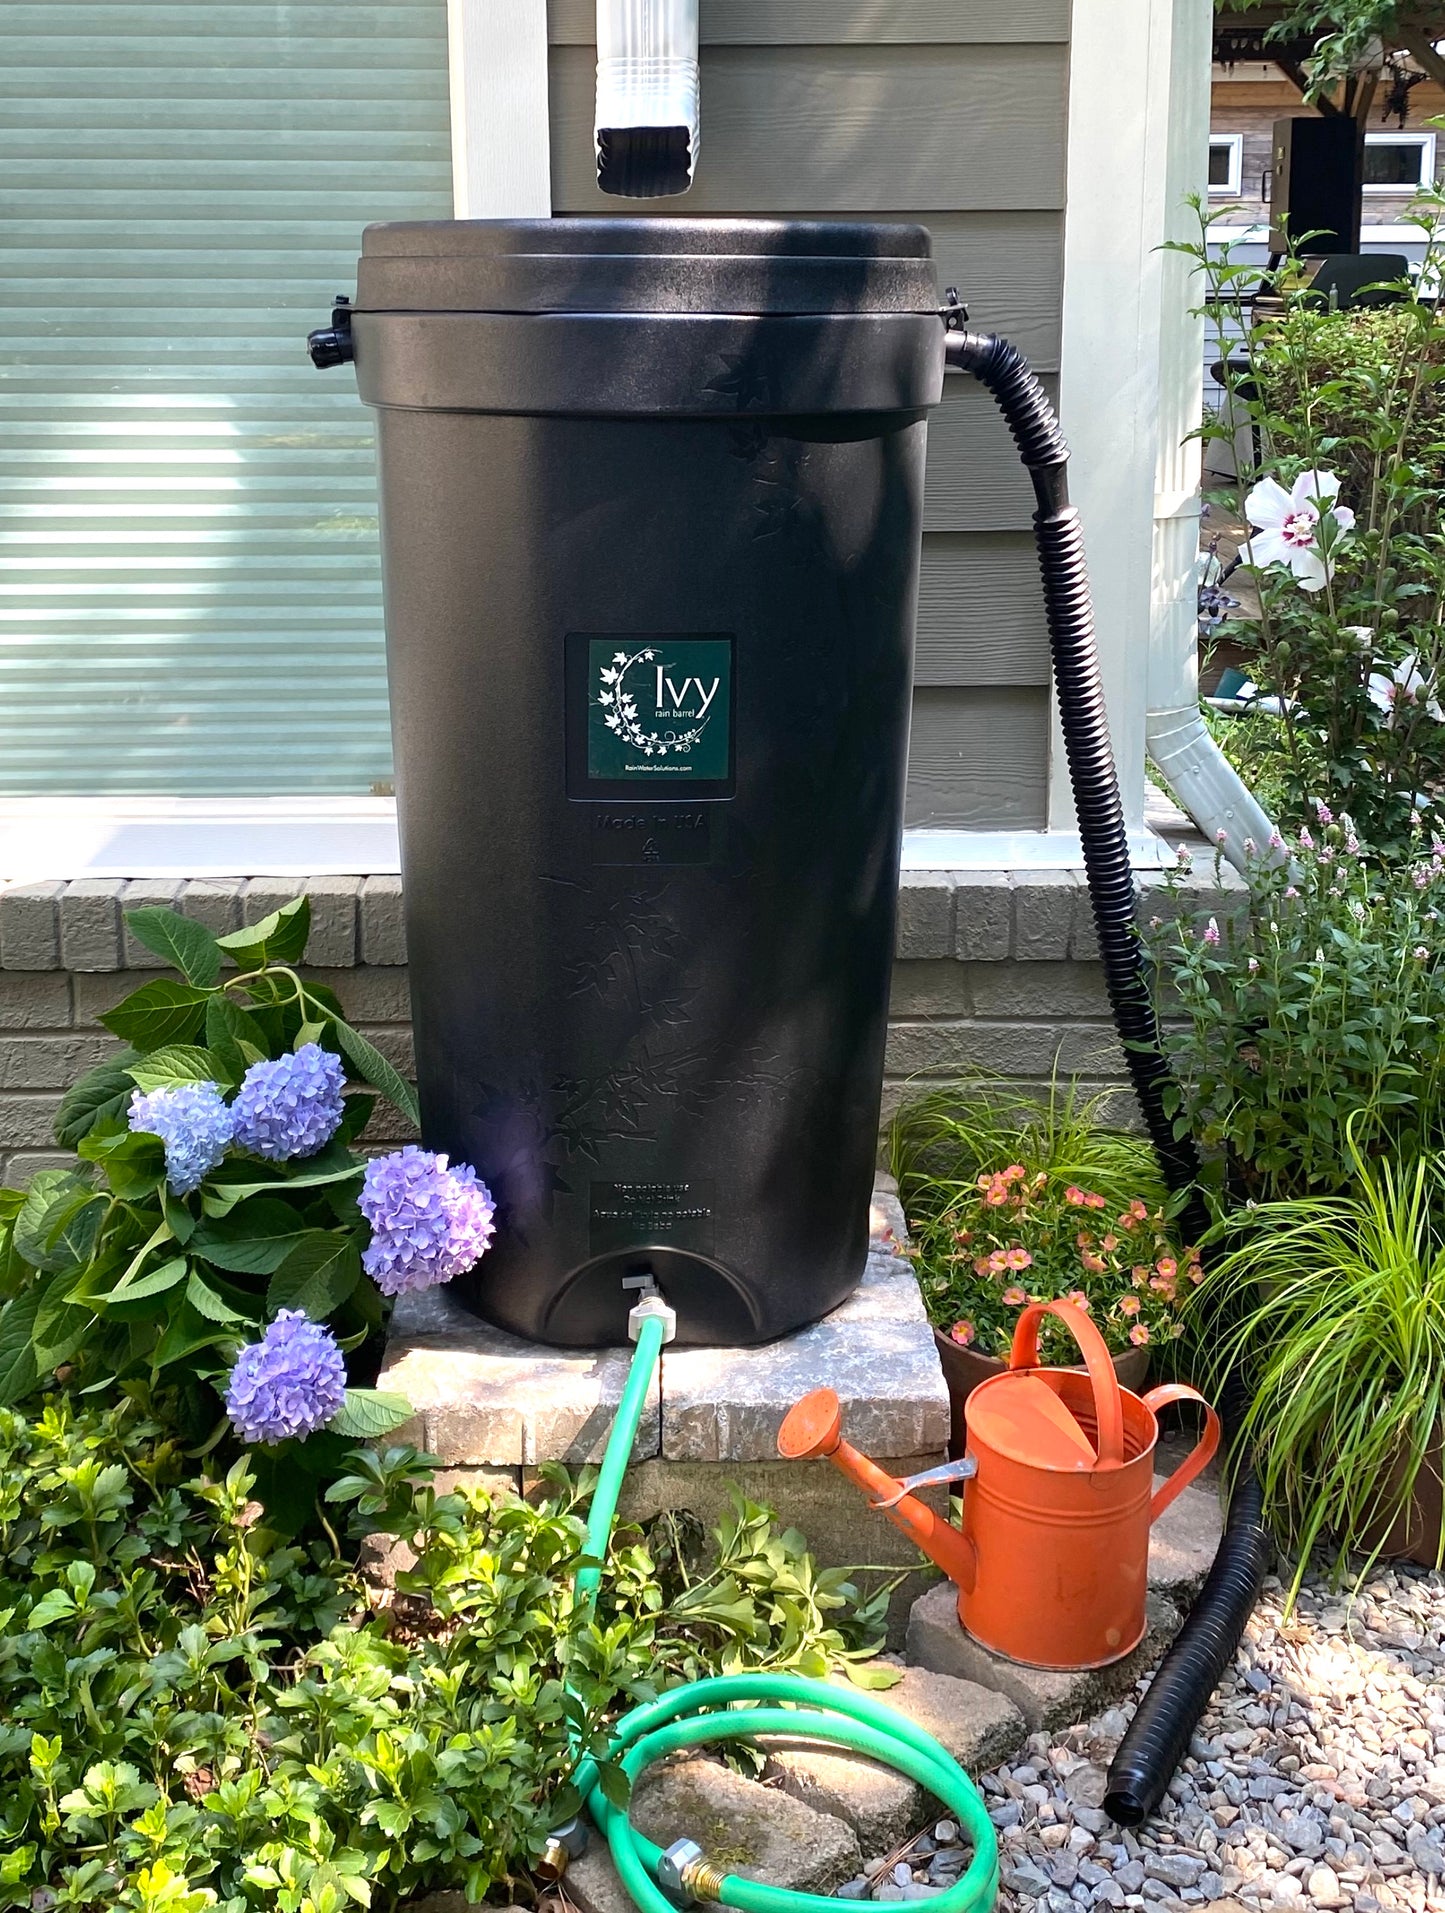 
                  
                    Greensboro’s Compost Bin & Rain Barrel Sale
                  
                